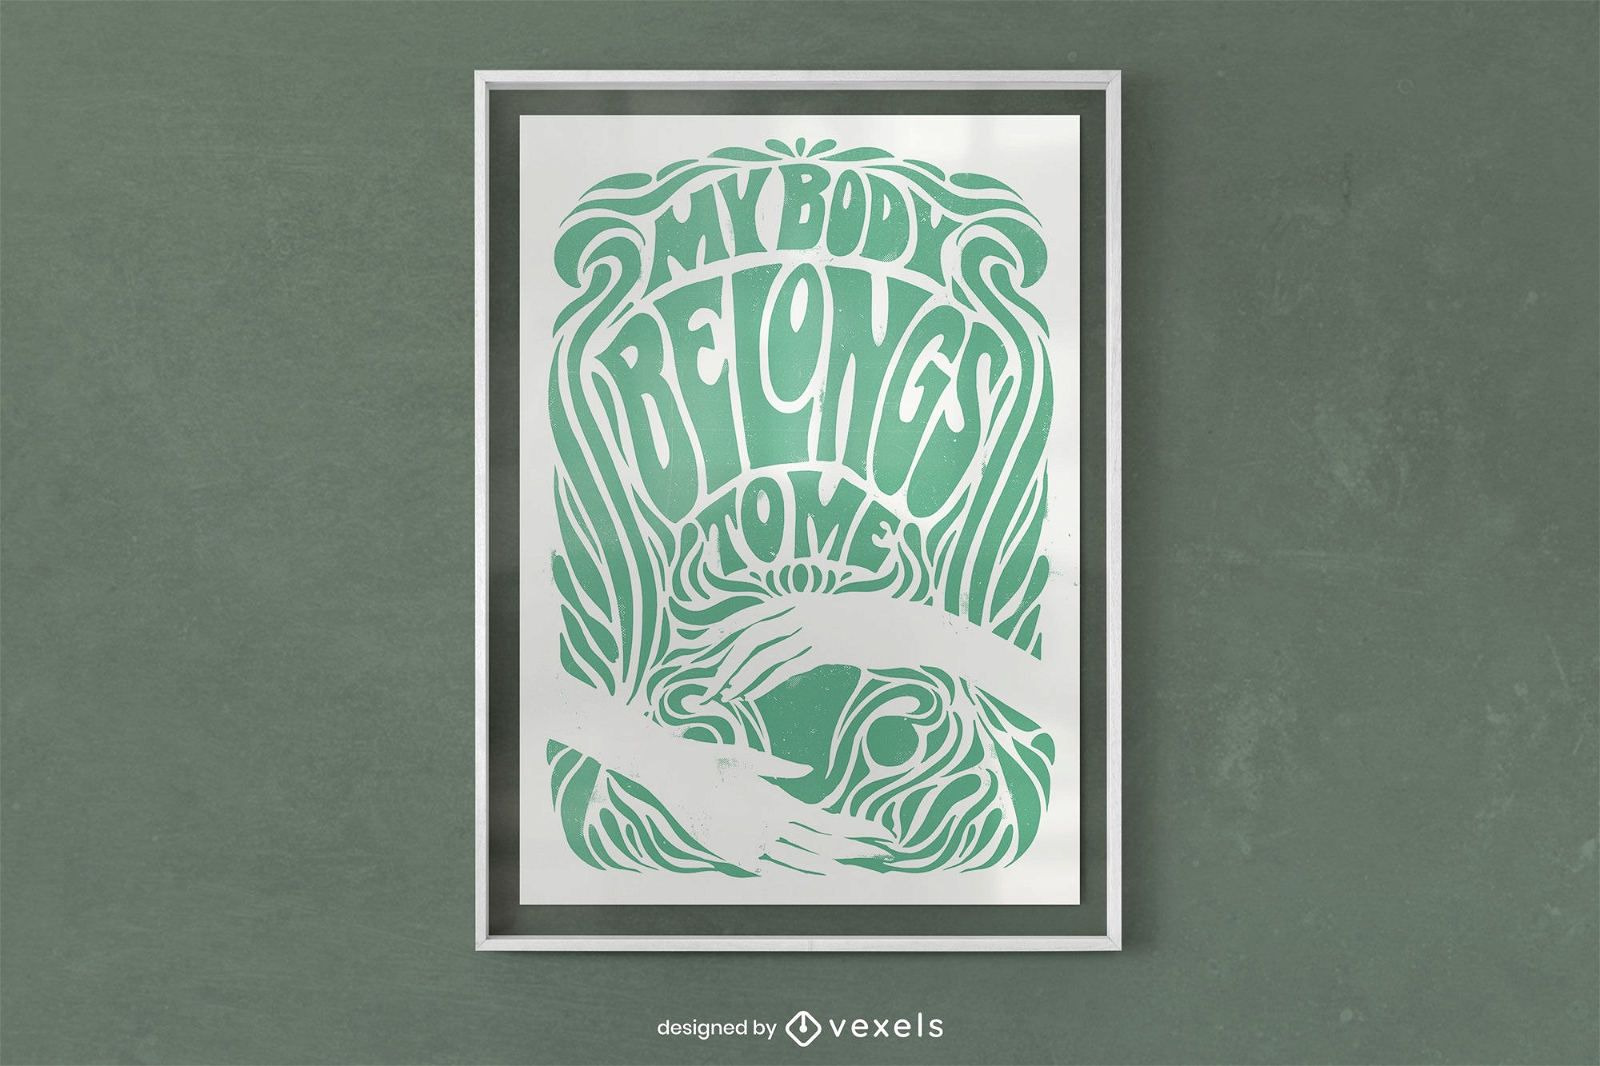 Uterus-Körper-Autonomie-Zitat-Poster-Design